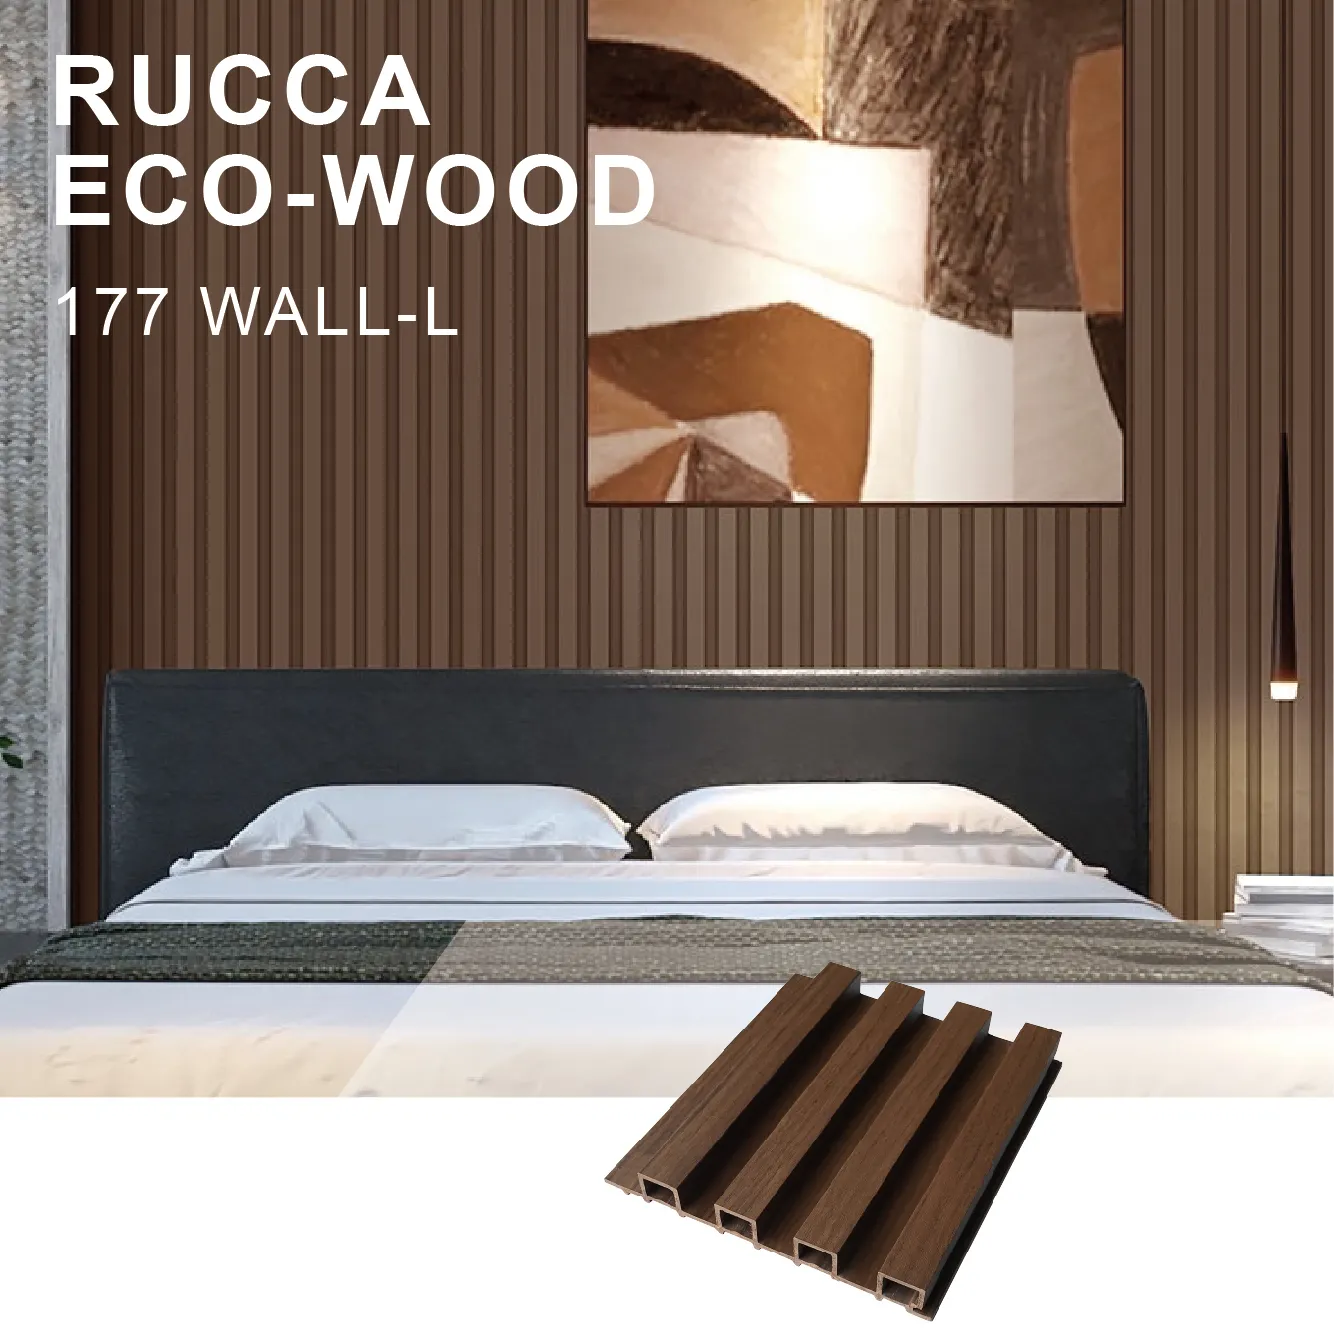 Rucca Wpc سهلة تثبيت لوحة حائط زخرفية/لوحة 177x21.5 مللي متر صديقة للبيئة صفح الزخرفية جدار